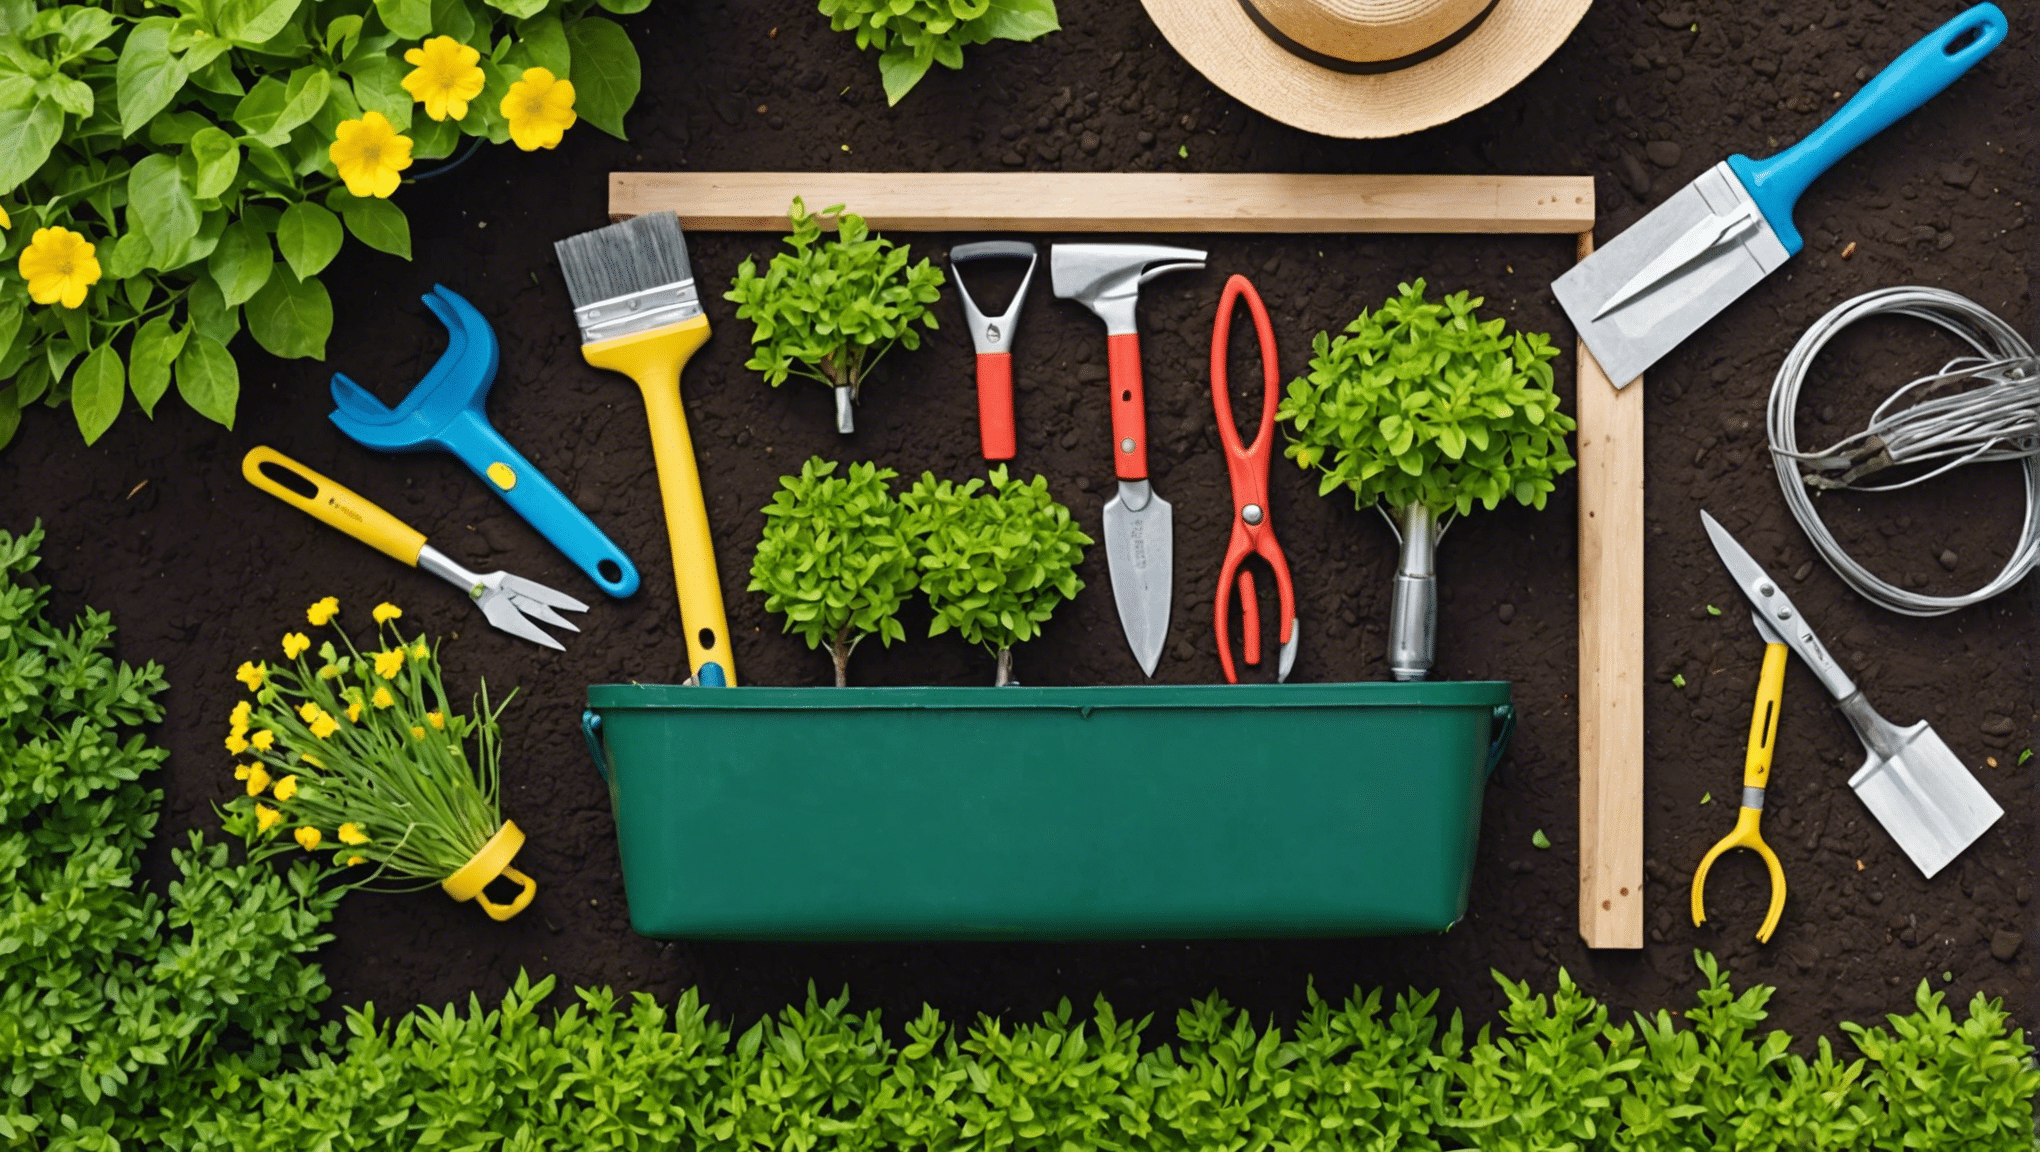 odkrijte predmete, ki jih morate spakirati v svojo torbo za vrtnarsko orodje, in naredite svoje vrtnarjenje bolj prijetno in učinkovito. od škarij za obrezovanje do rokavic, ugotovite, kaj potrebujete za uspešno vrtnarjenje.